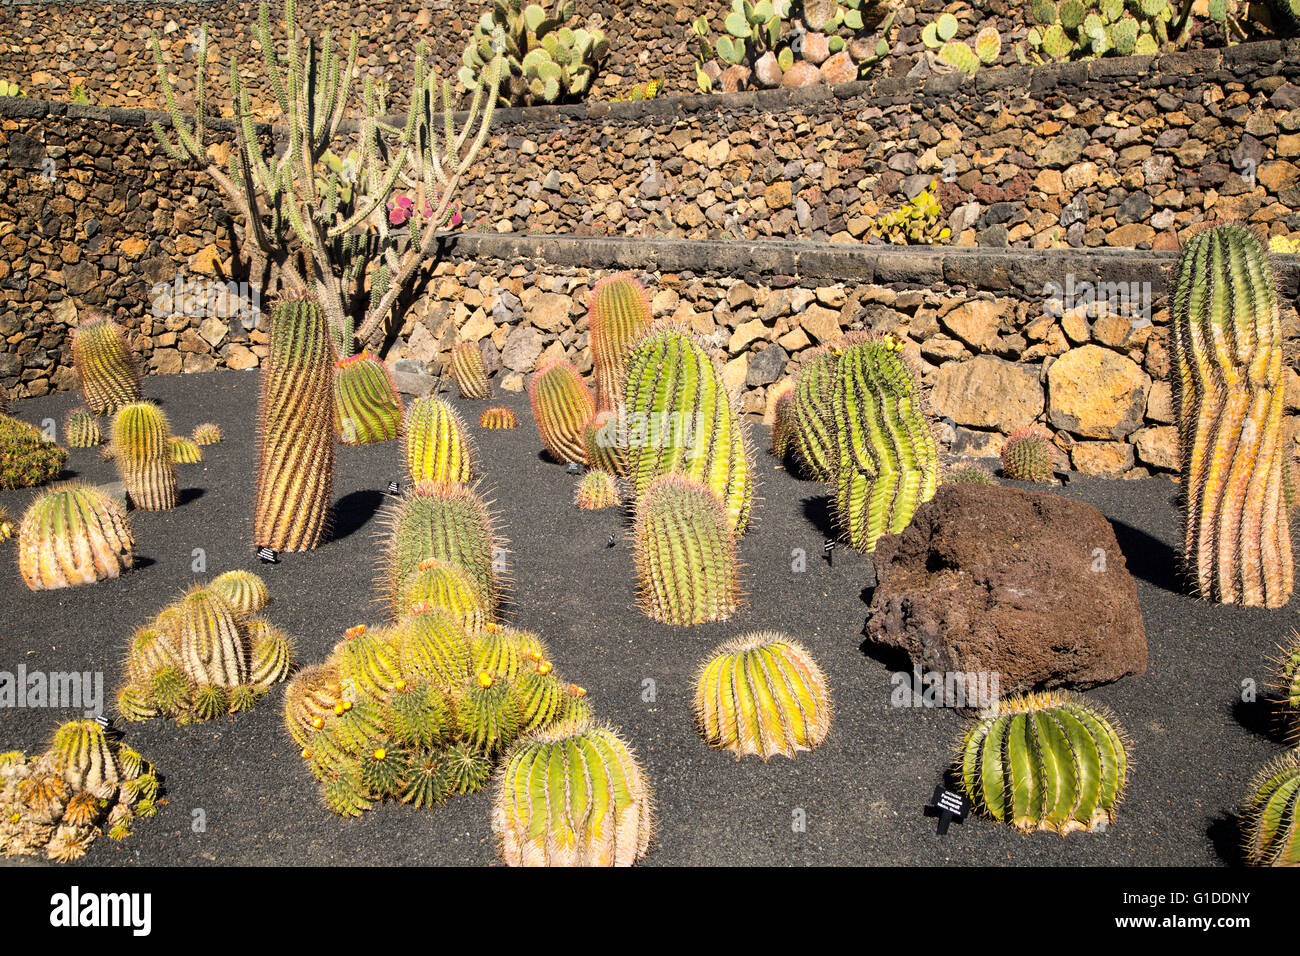 Dentro de las plantas de cactus jardín de cactus diseñado por César Manrique, Guatiza, Lanzarote, Islas Canarias, España. Foto de stock